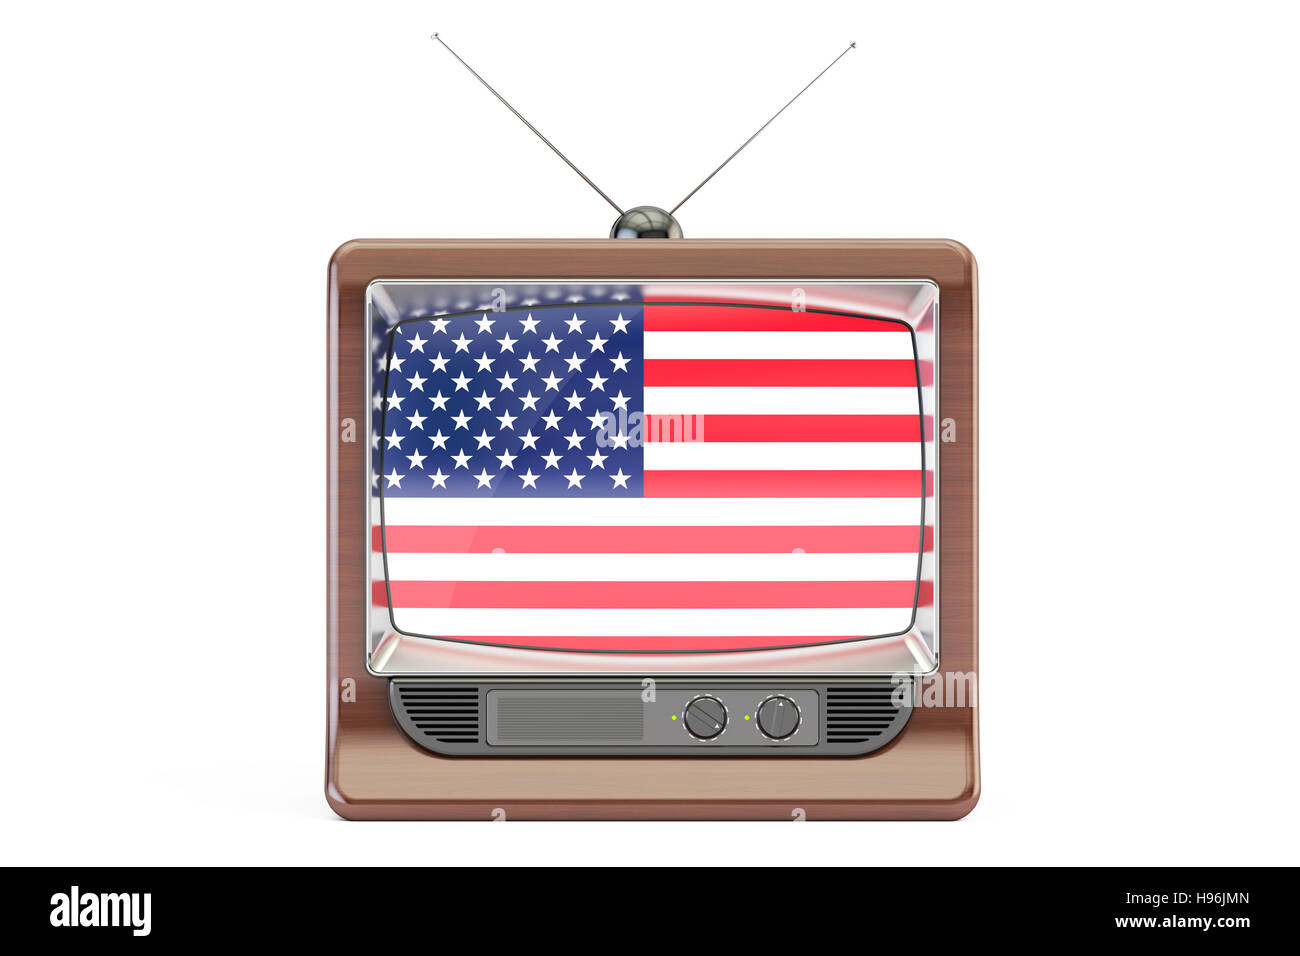 Vieux téléviseur avec le drapeau des Etats-Unis. Concept de la télévision américaine, rendu 3D isolé sur fond blanc Banque D'Images